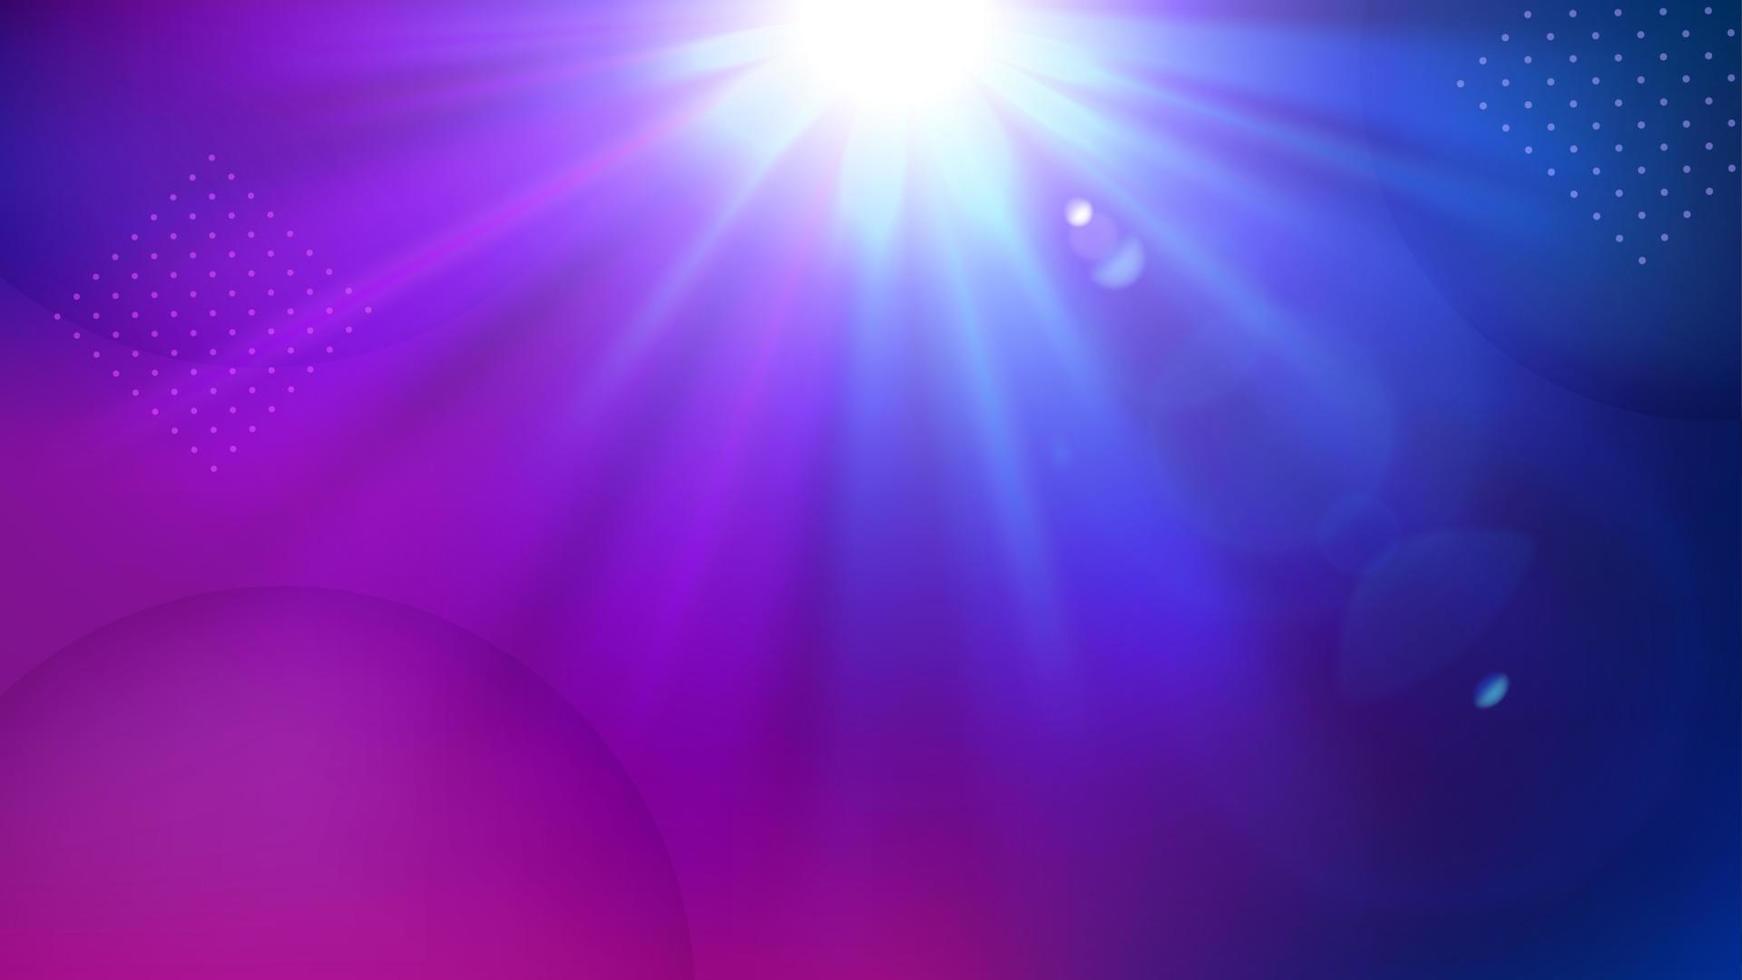 sfondo luminoso viola, elegante luce illuminata. illustrazione vettoriale widescreen